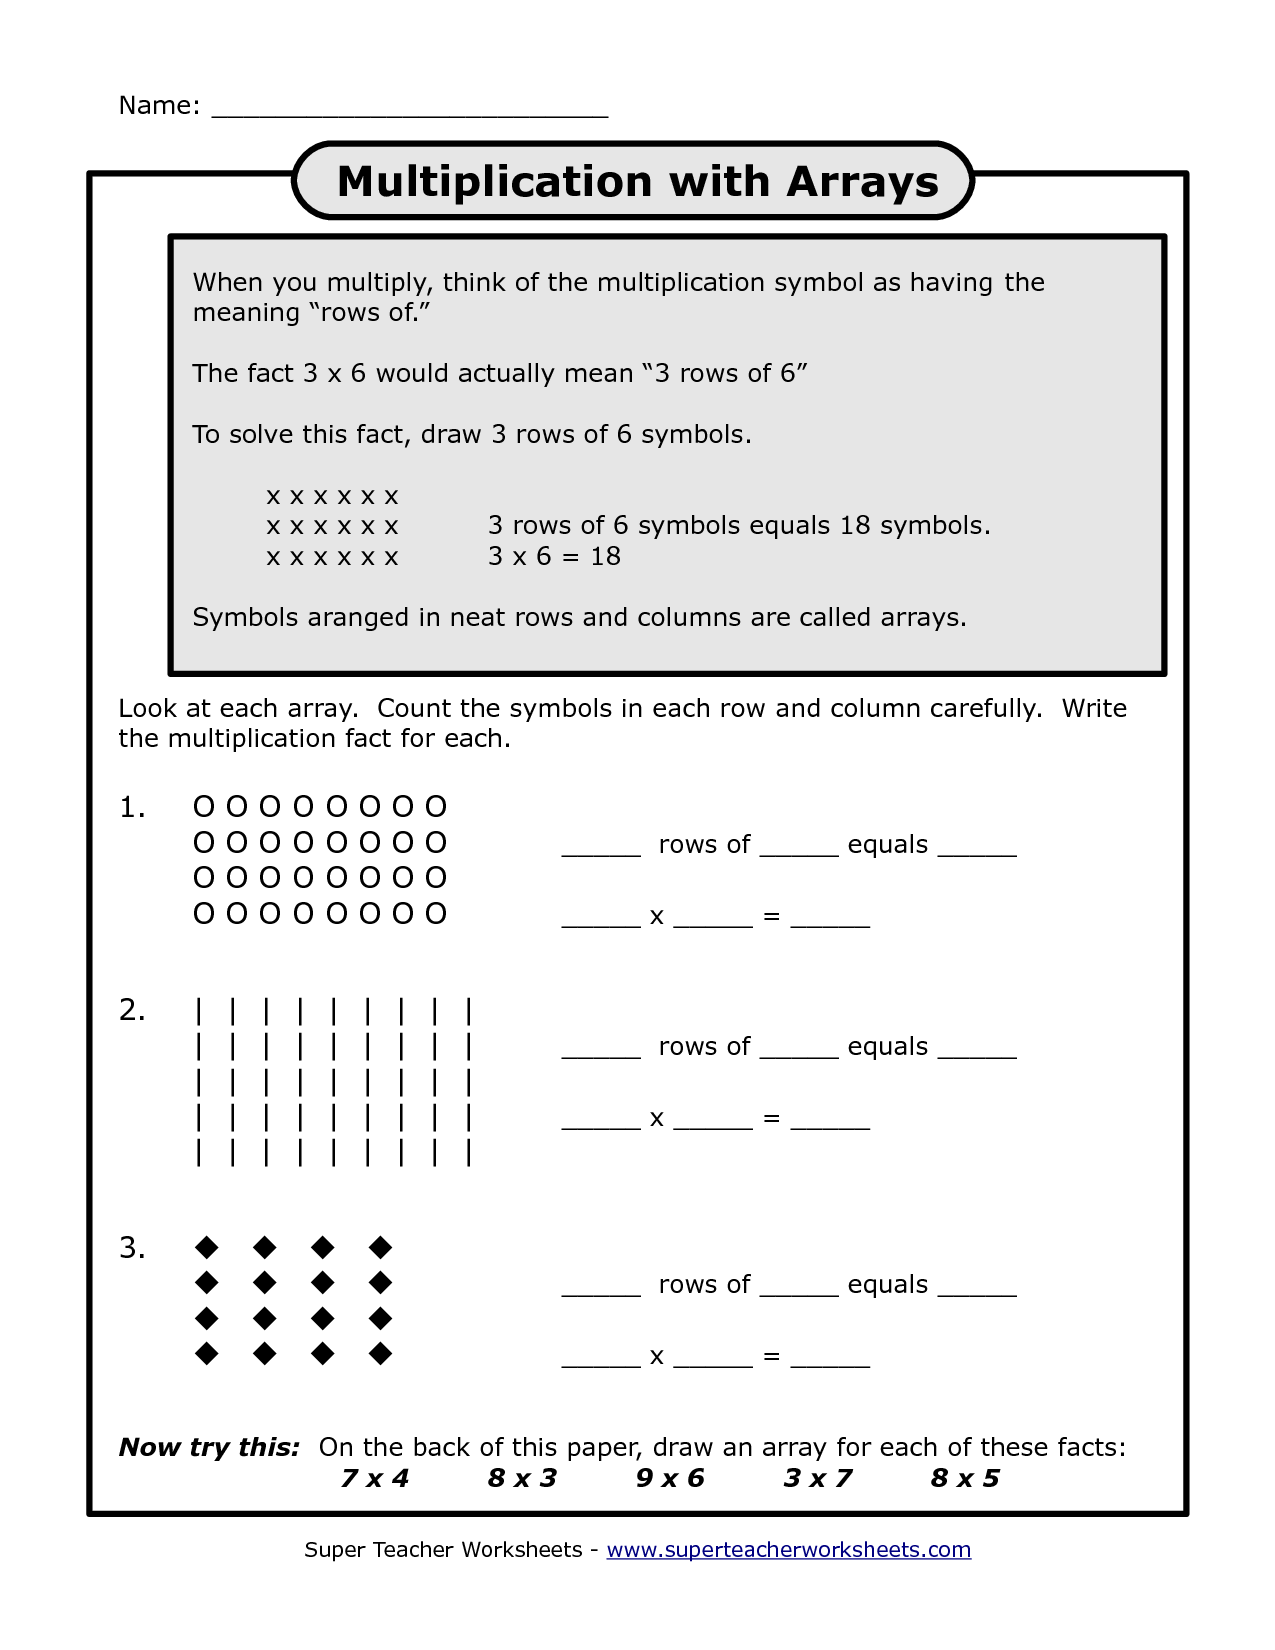 multiplication array worksheets 3rd grade_123540